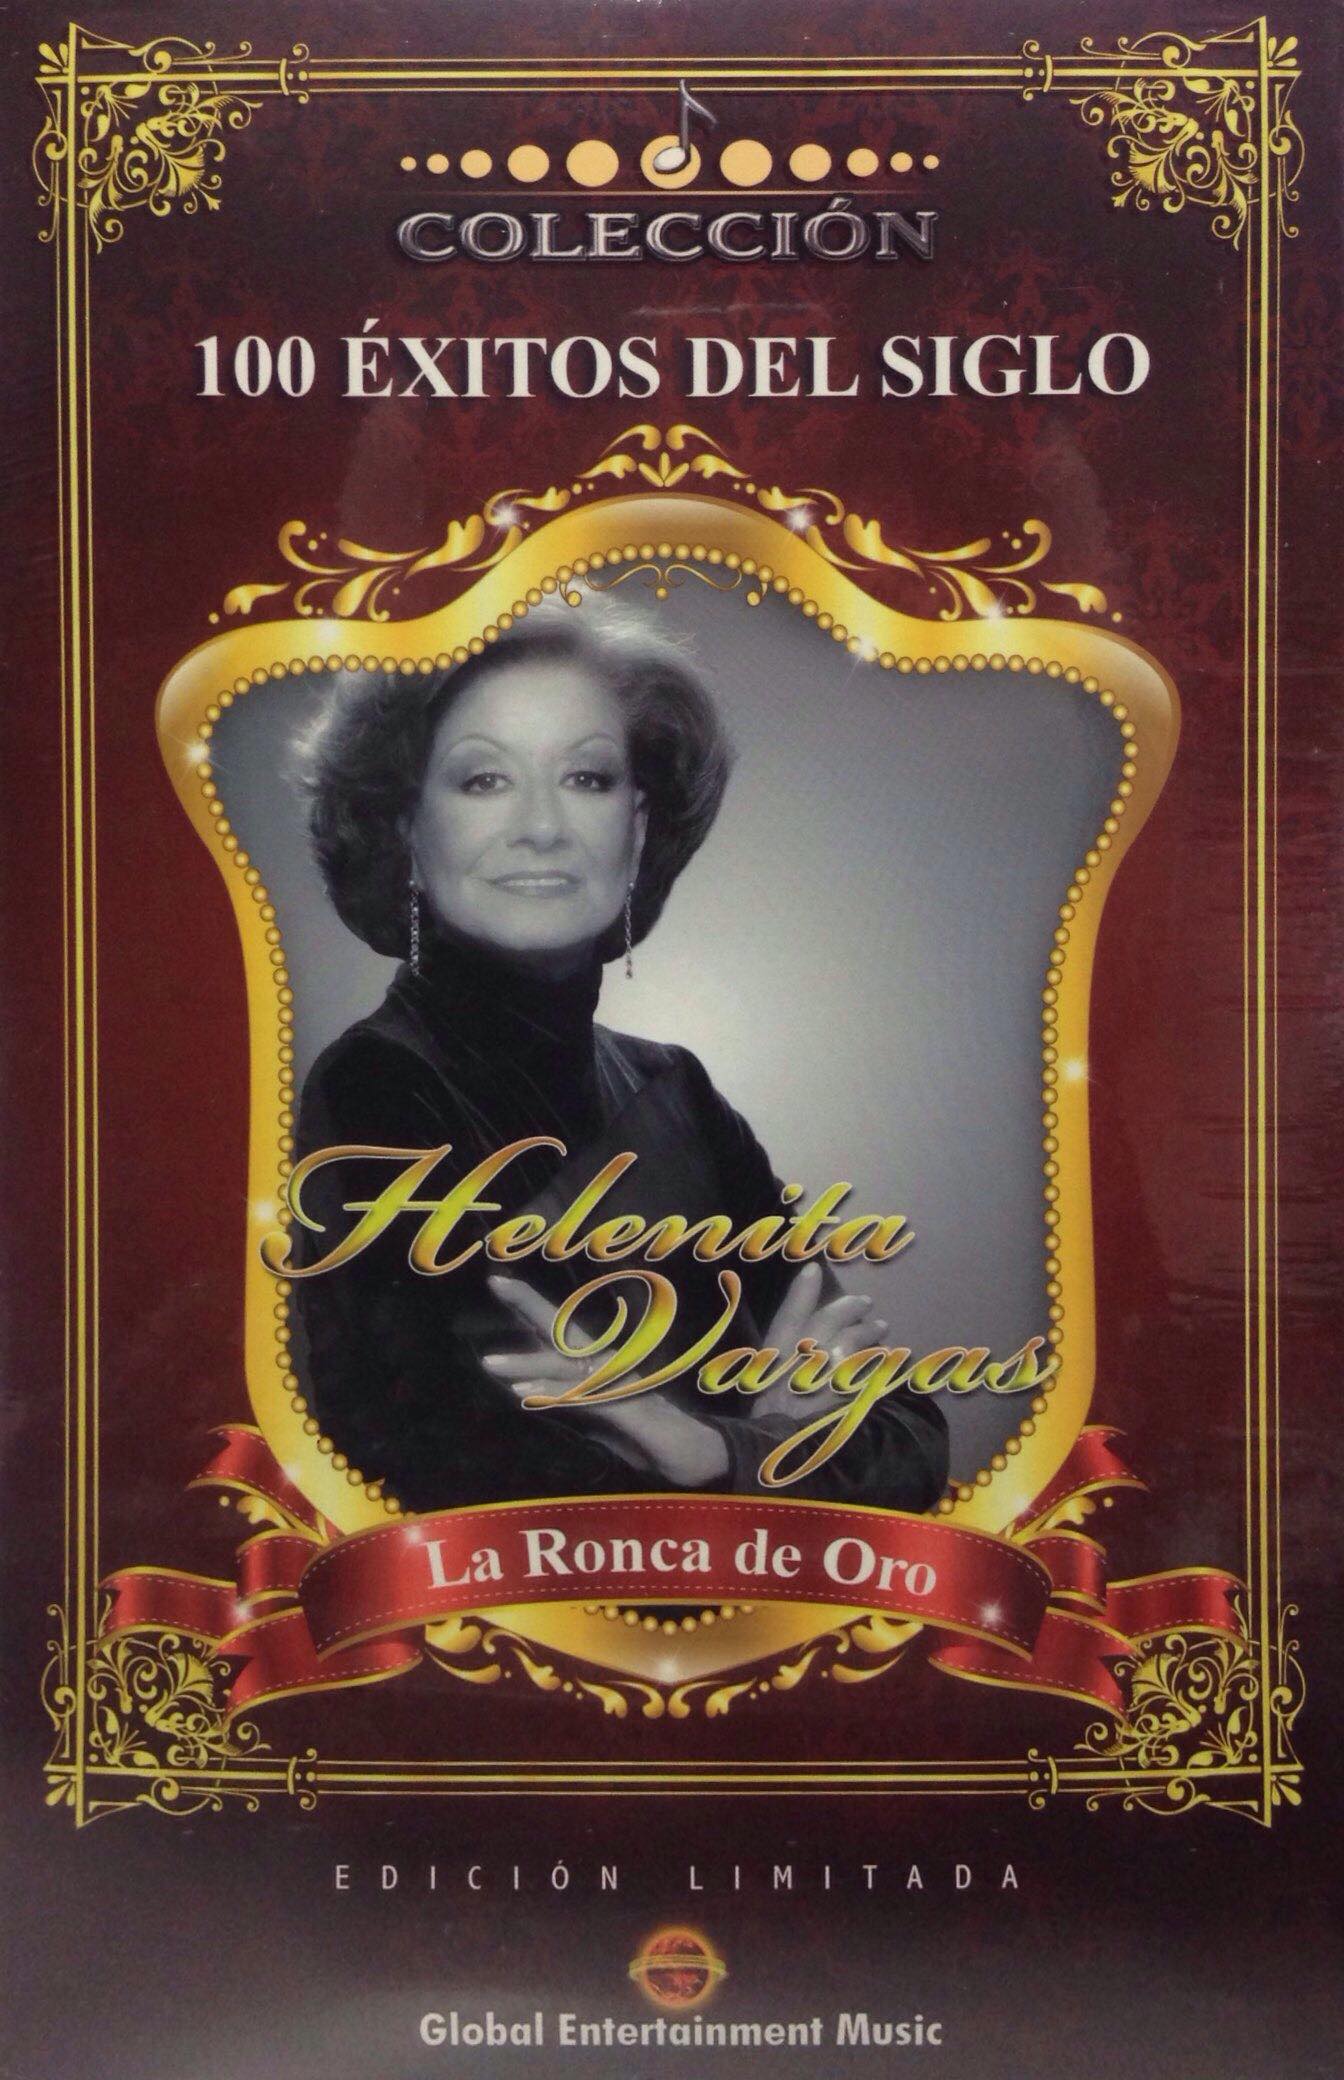 CDX5 Colección 100 Éxitos Del Siglo La Ronca De Oro - Helenita Vargas